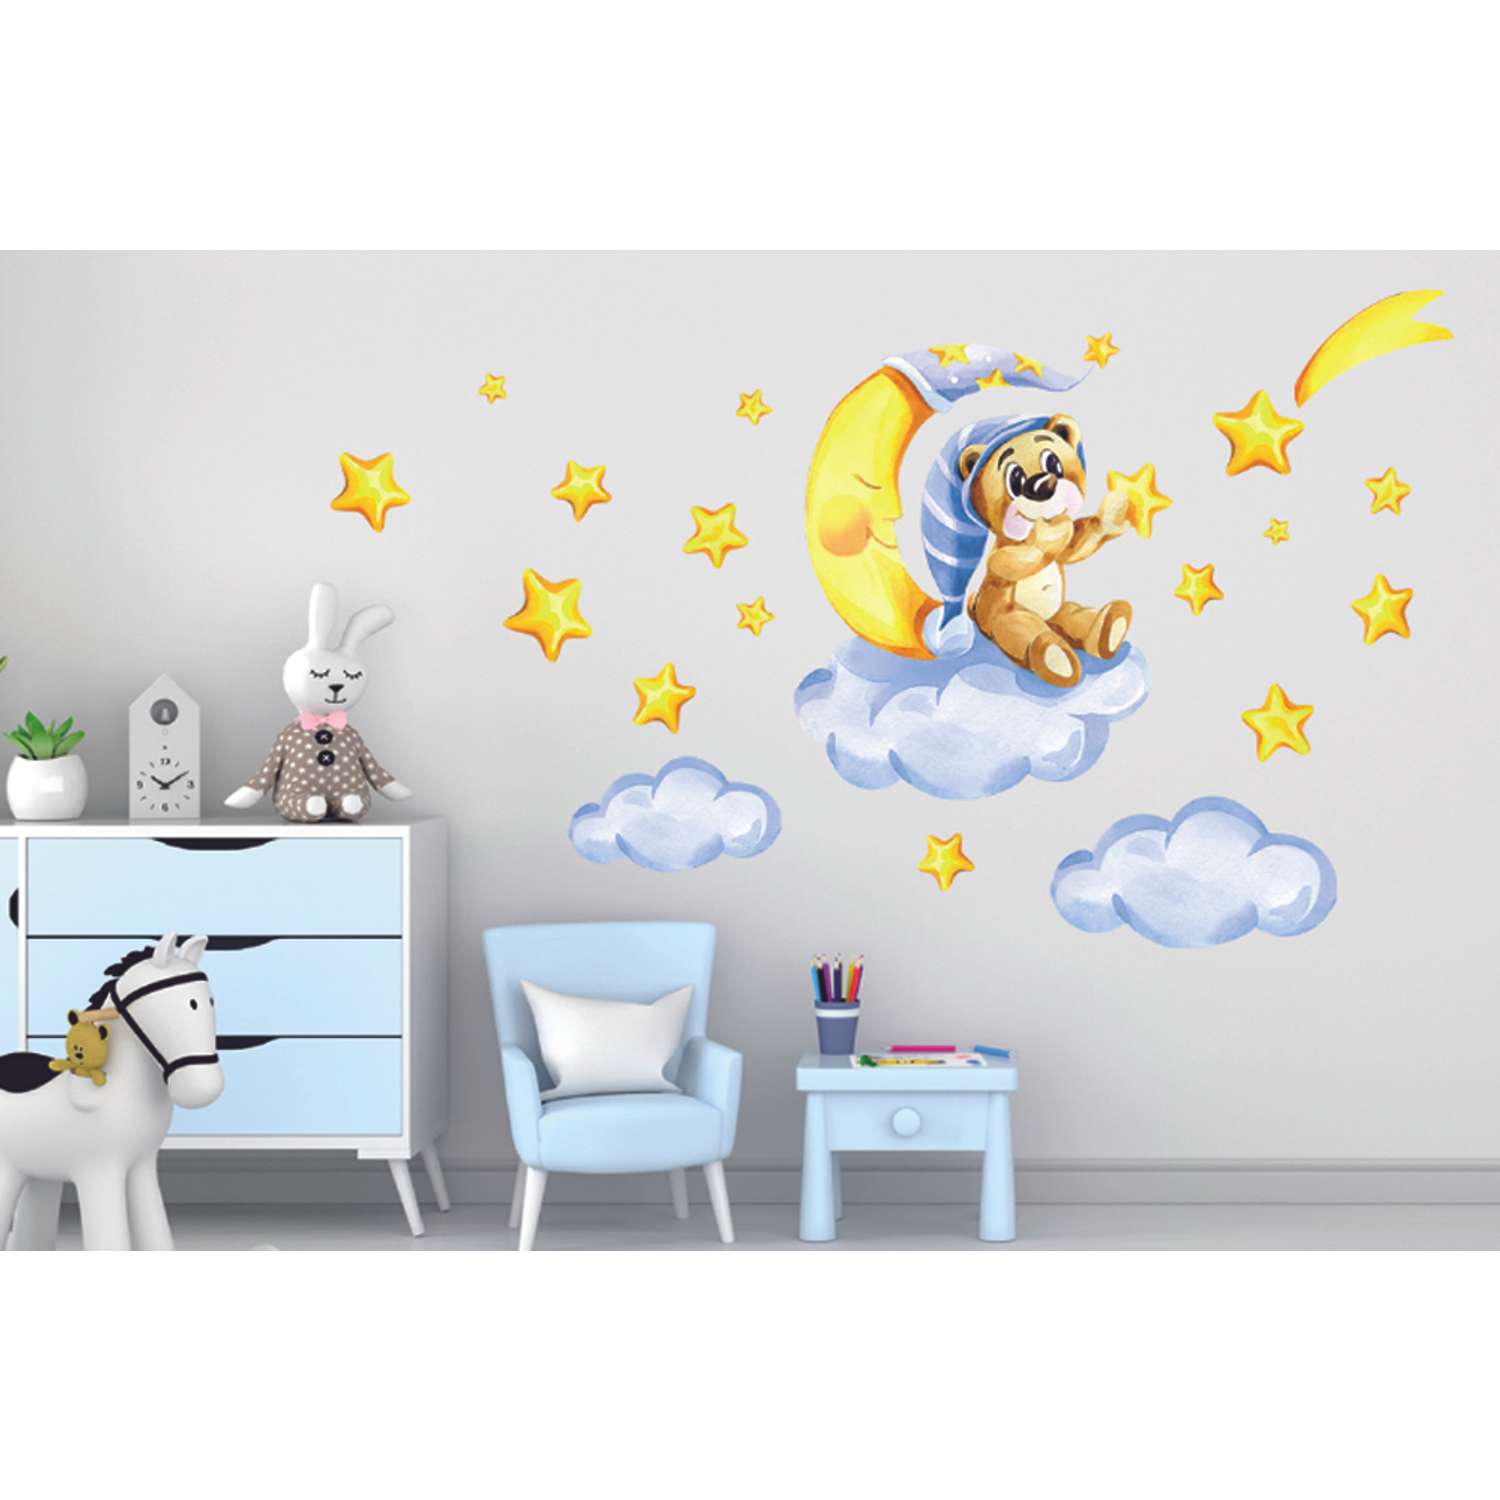 Наклейка оформительская ГК Горчаков в детскую комнату сыну с рисунком мишка для декора - фото 3